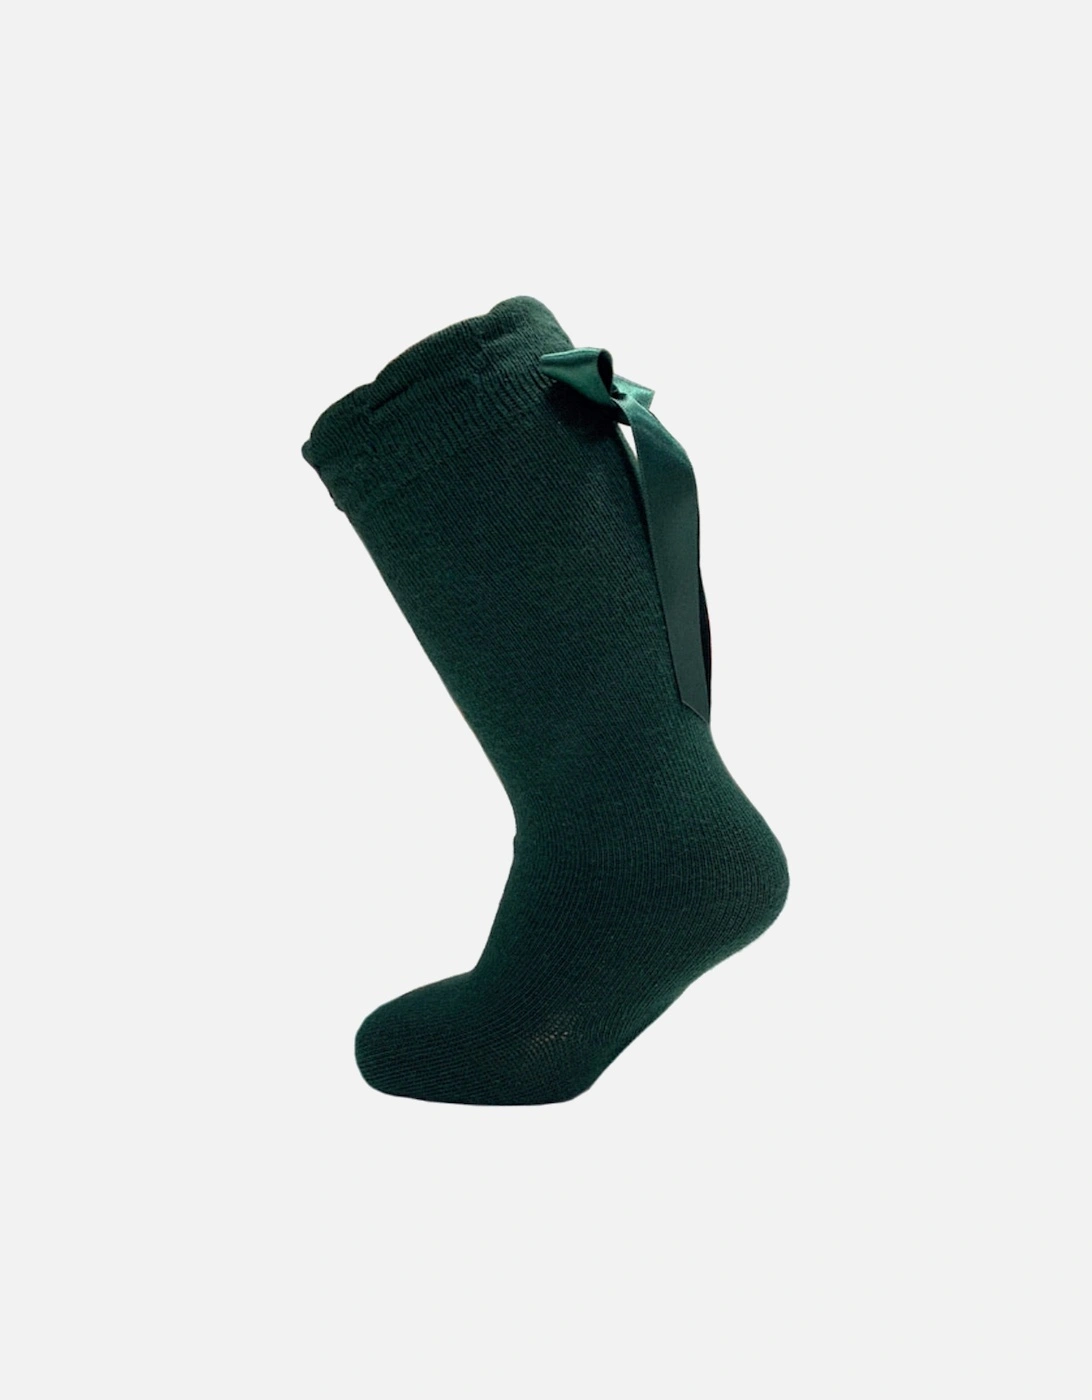 Bottle Green Knee High Bow Socks, 2 of 1